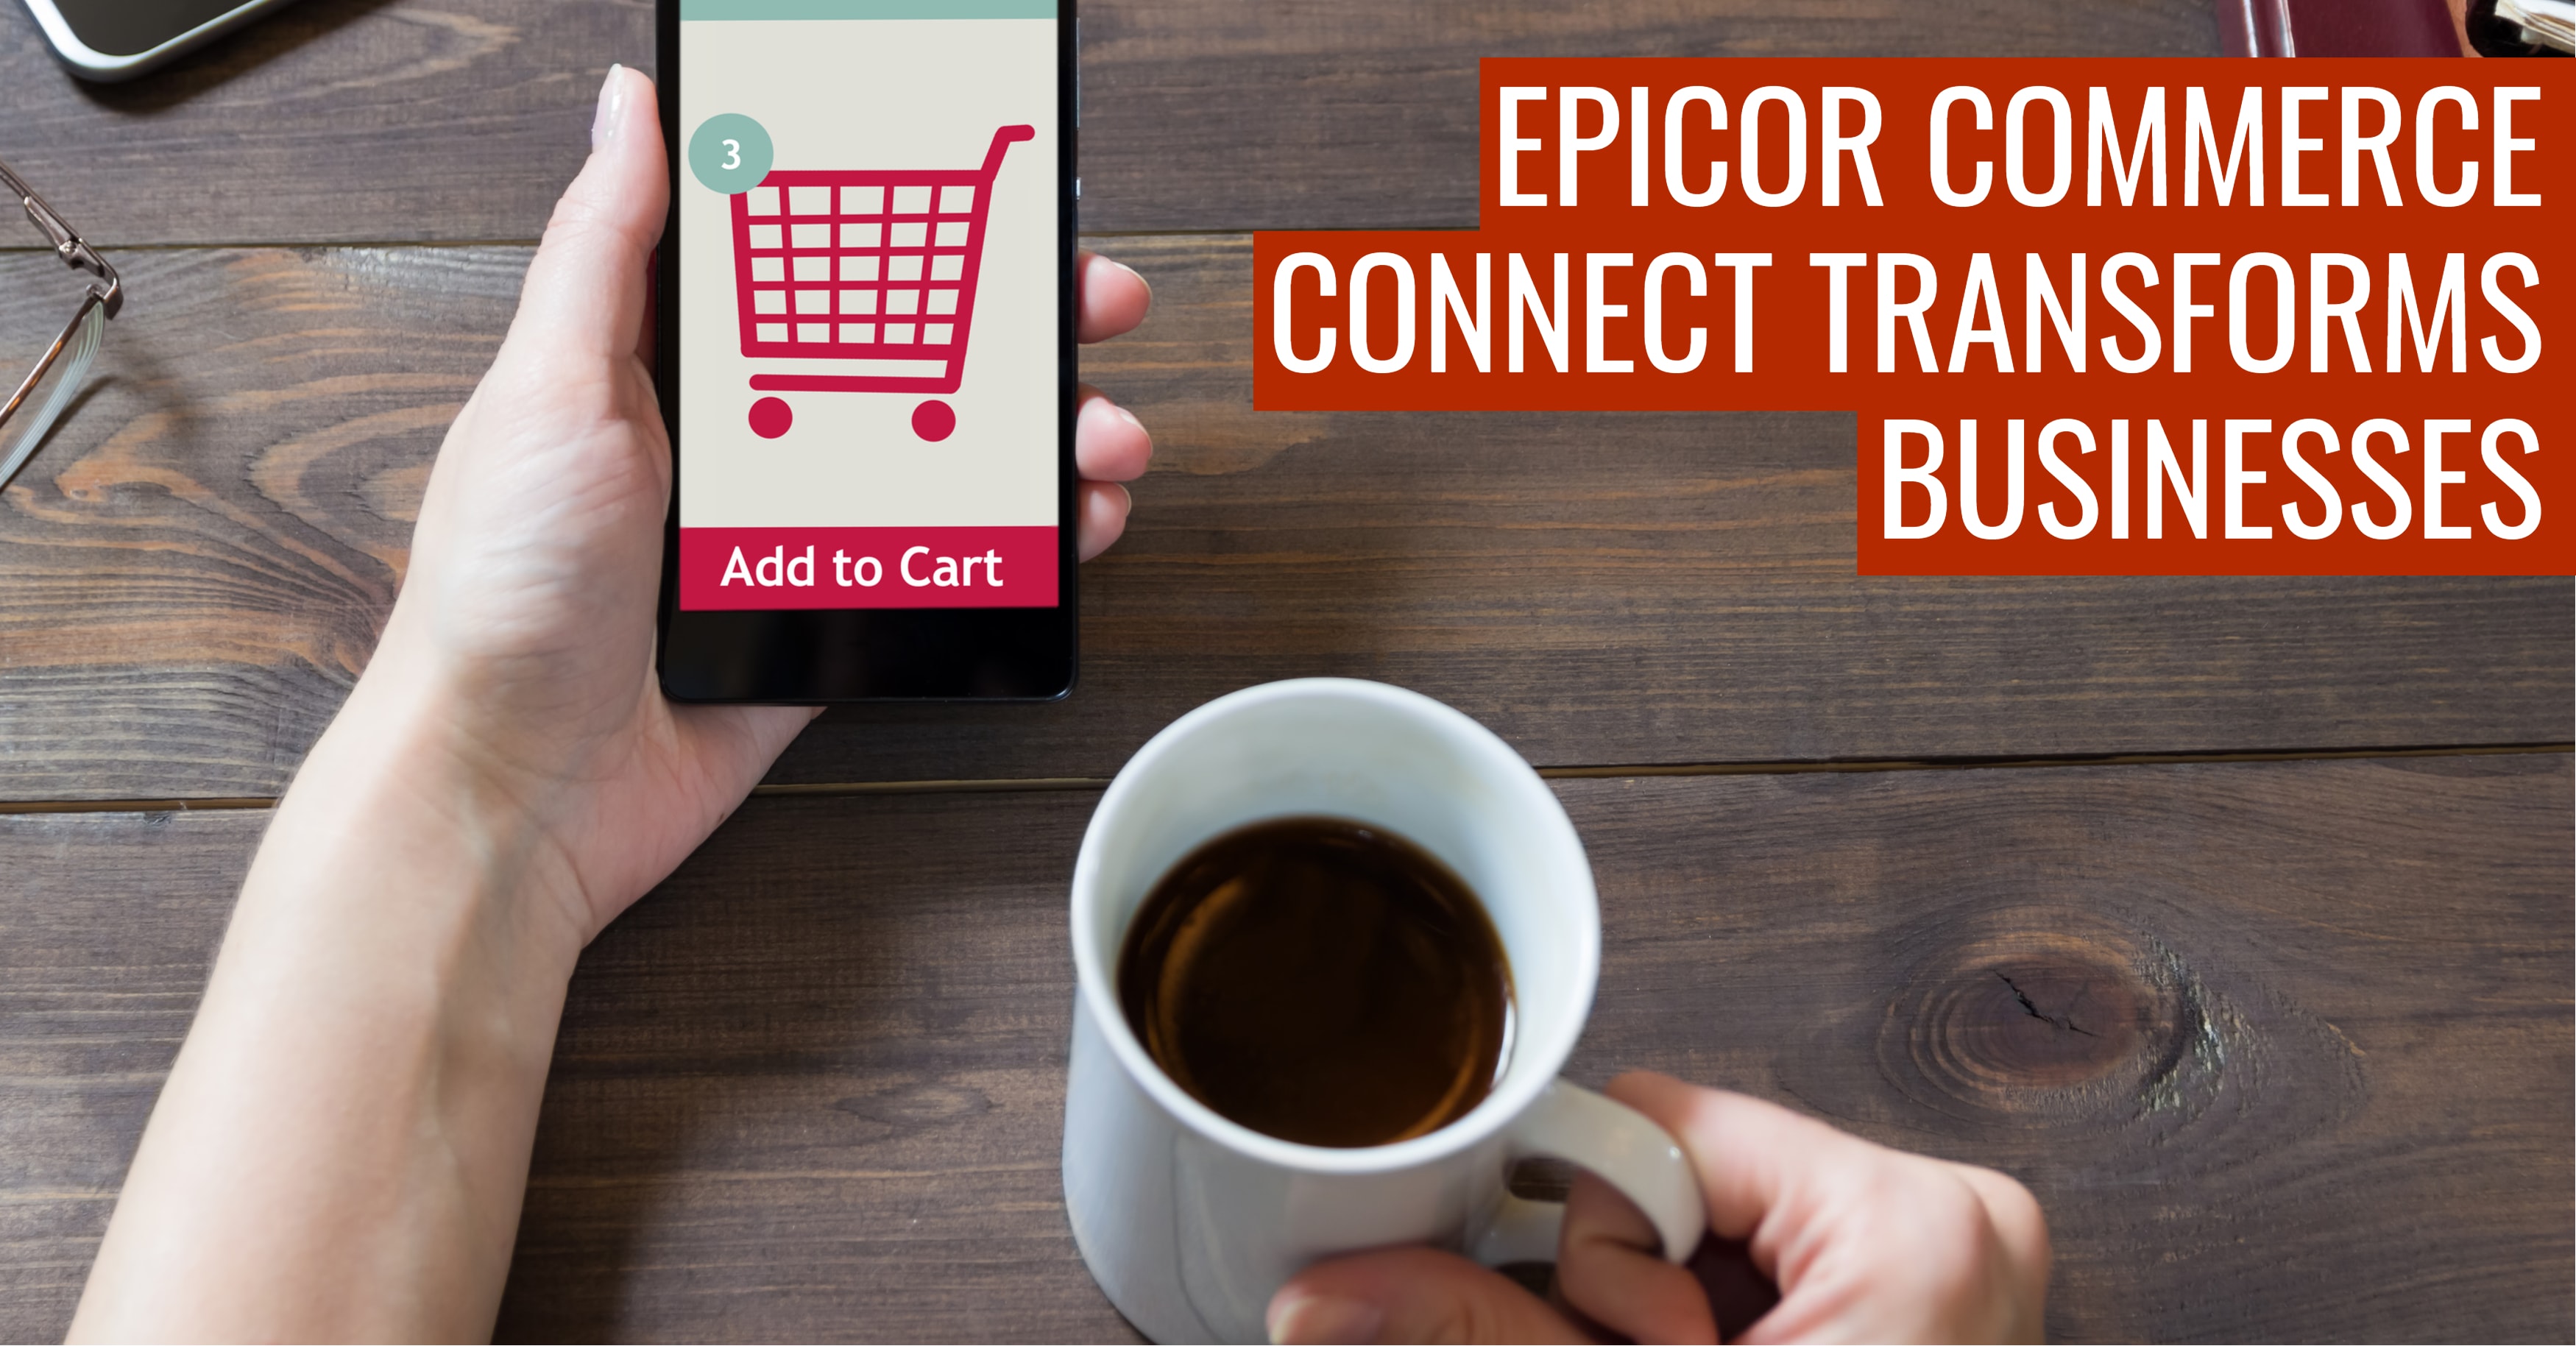 Epicor Commerce Connect